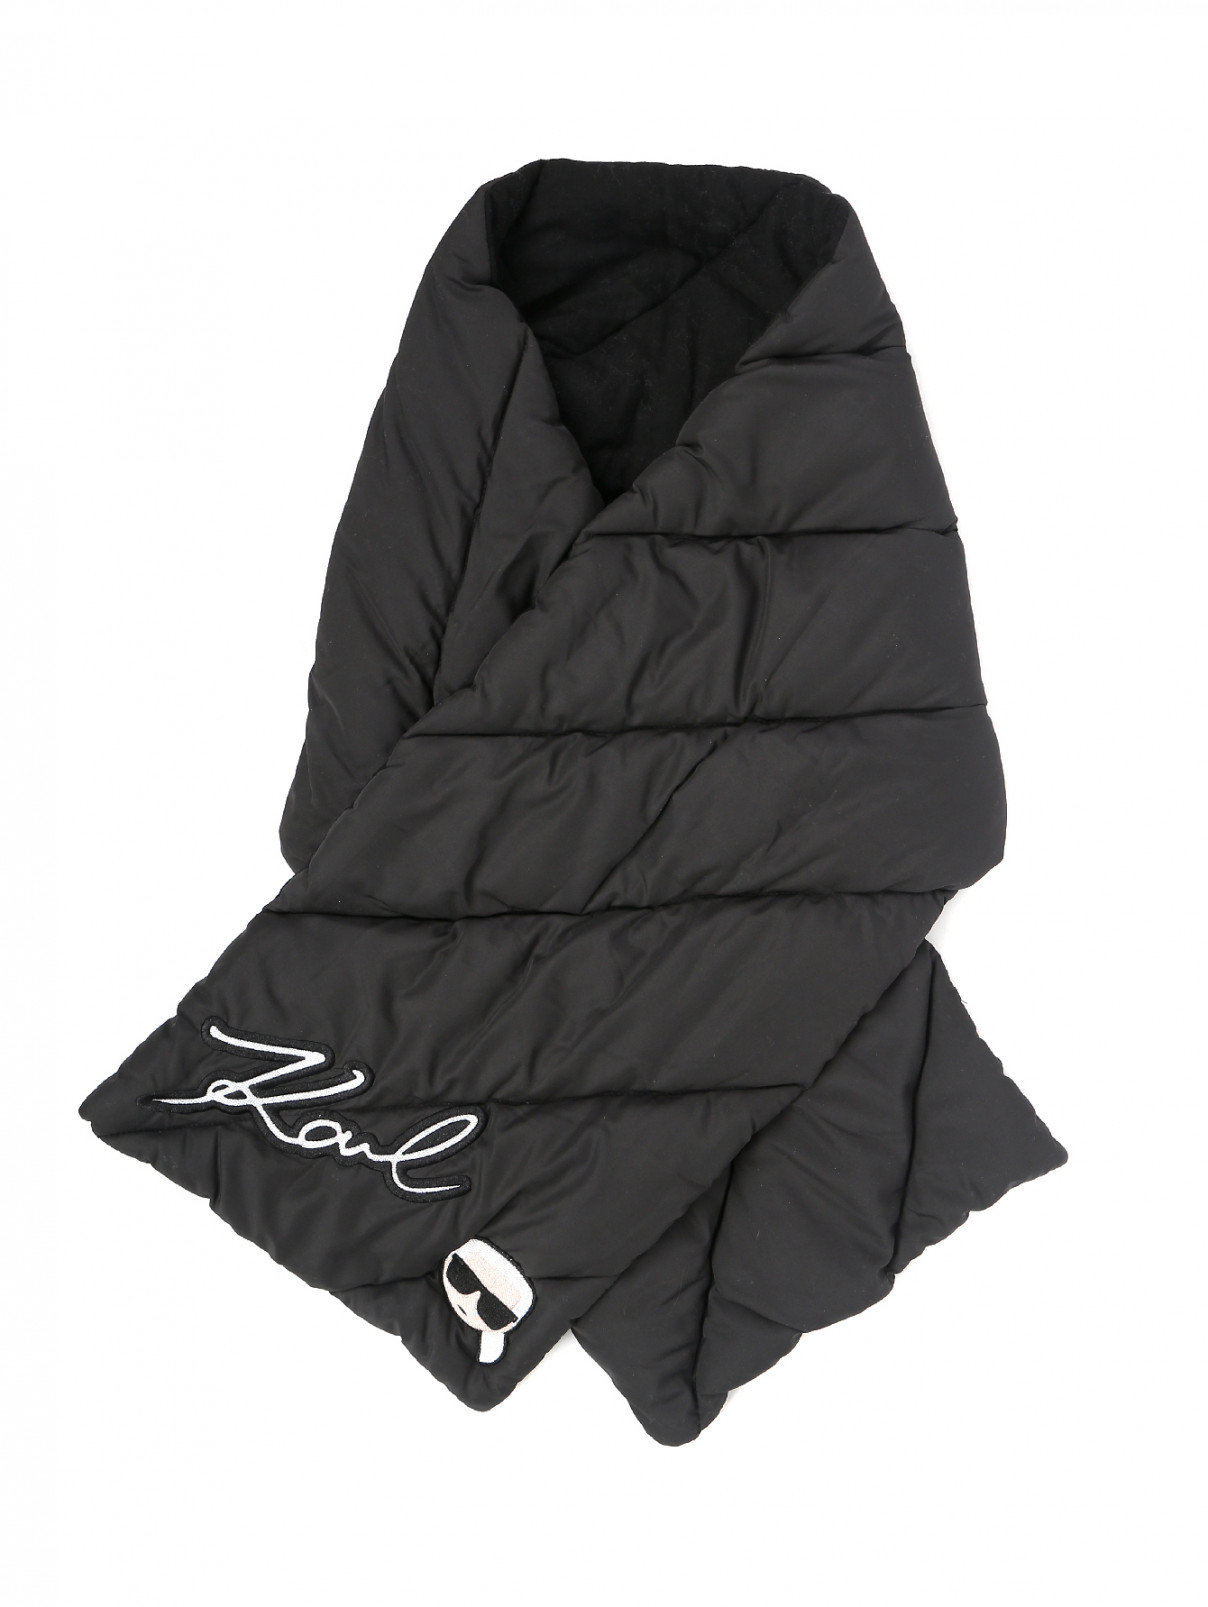 Шарф стеганый с нашивками Karl Lagerfeld  –  Общий вид  – Цвет:  Черный